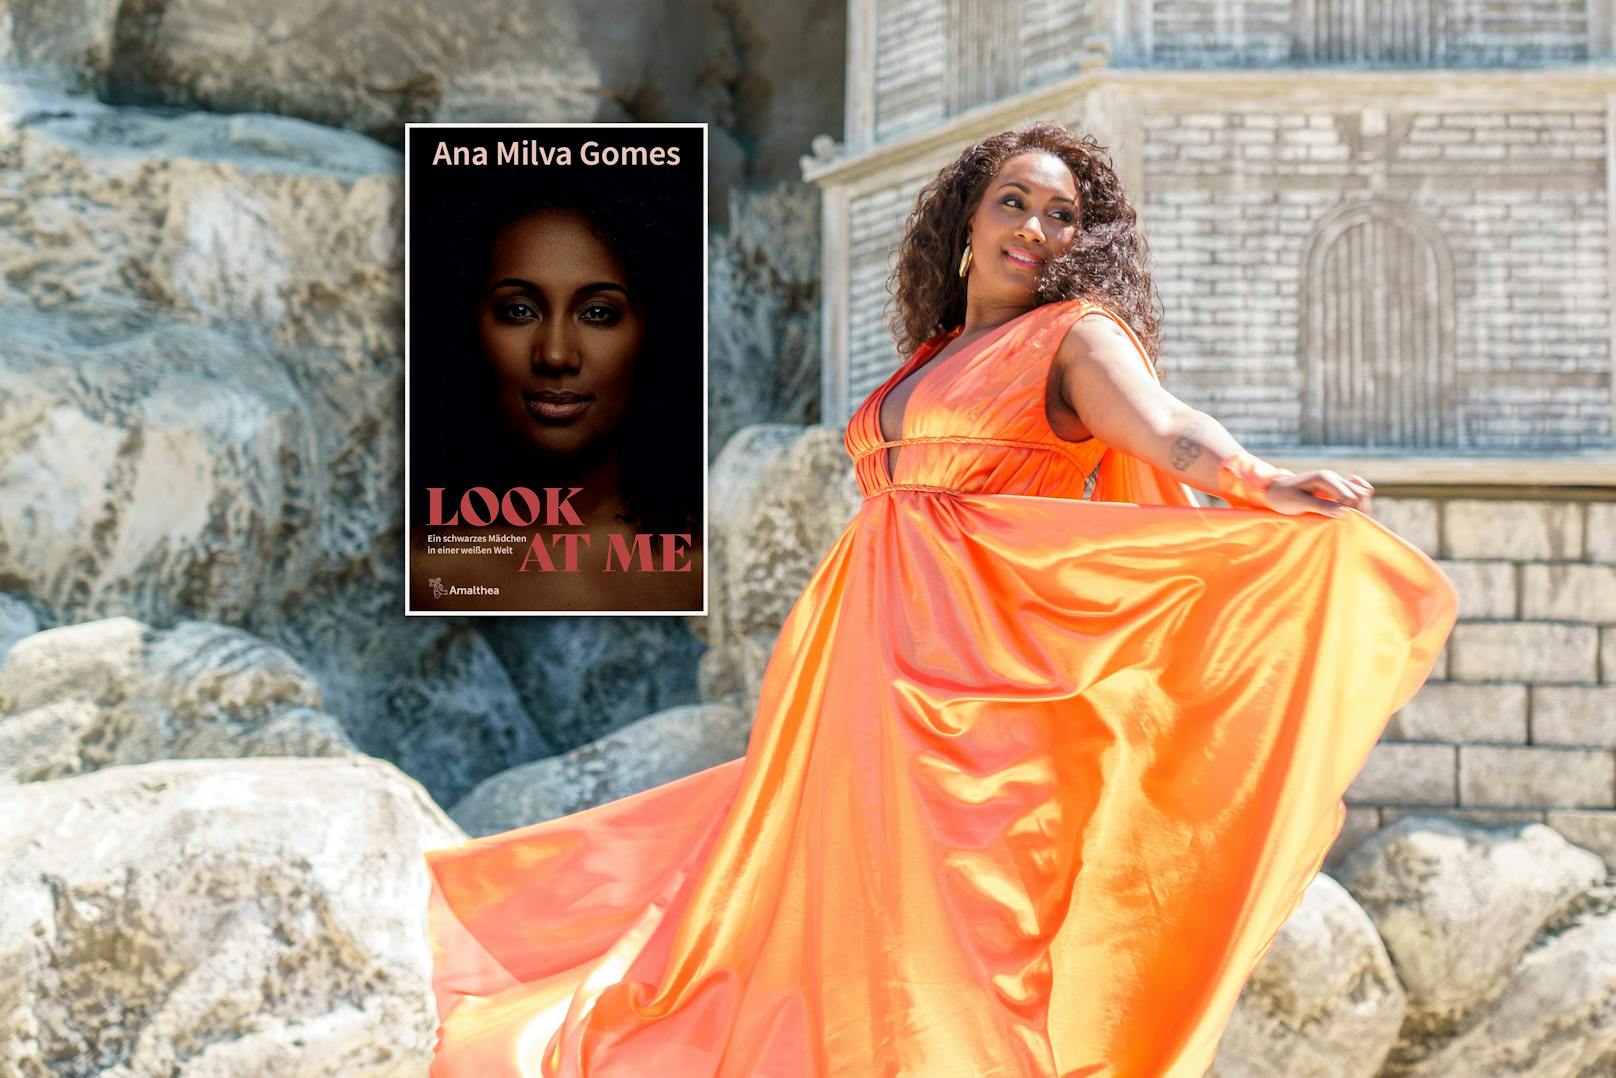 Musicalstar Ana Milva Gomes spricht in ihrem Buch "Look at me" über Alltags-Rassismus, den sie erlebte.